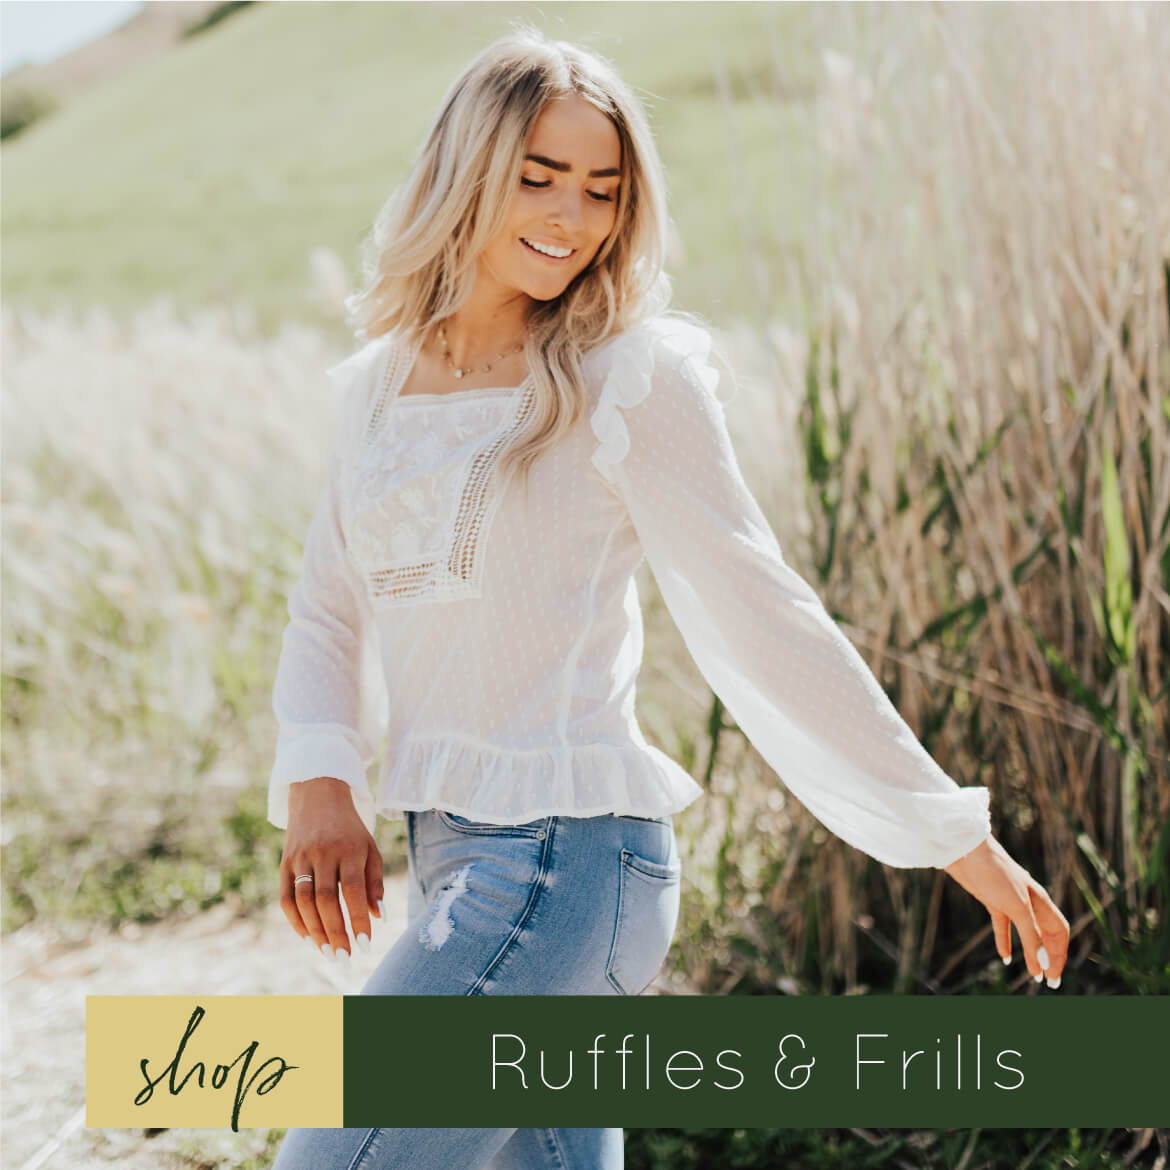 ruffle clothing styles, ruffle tops, women's clothing